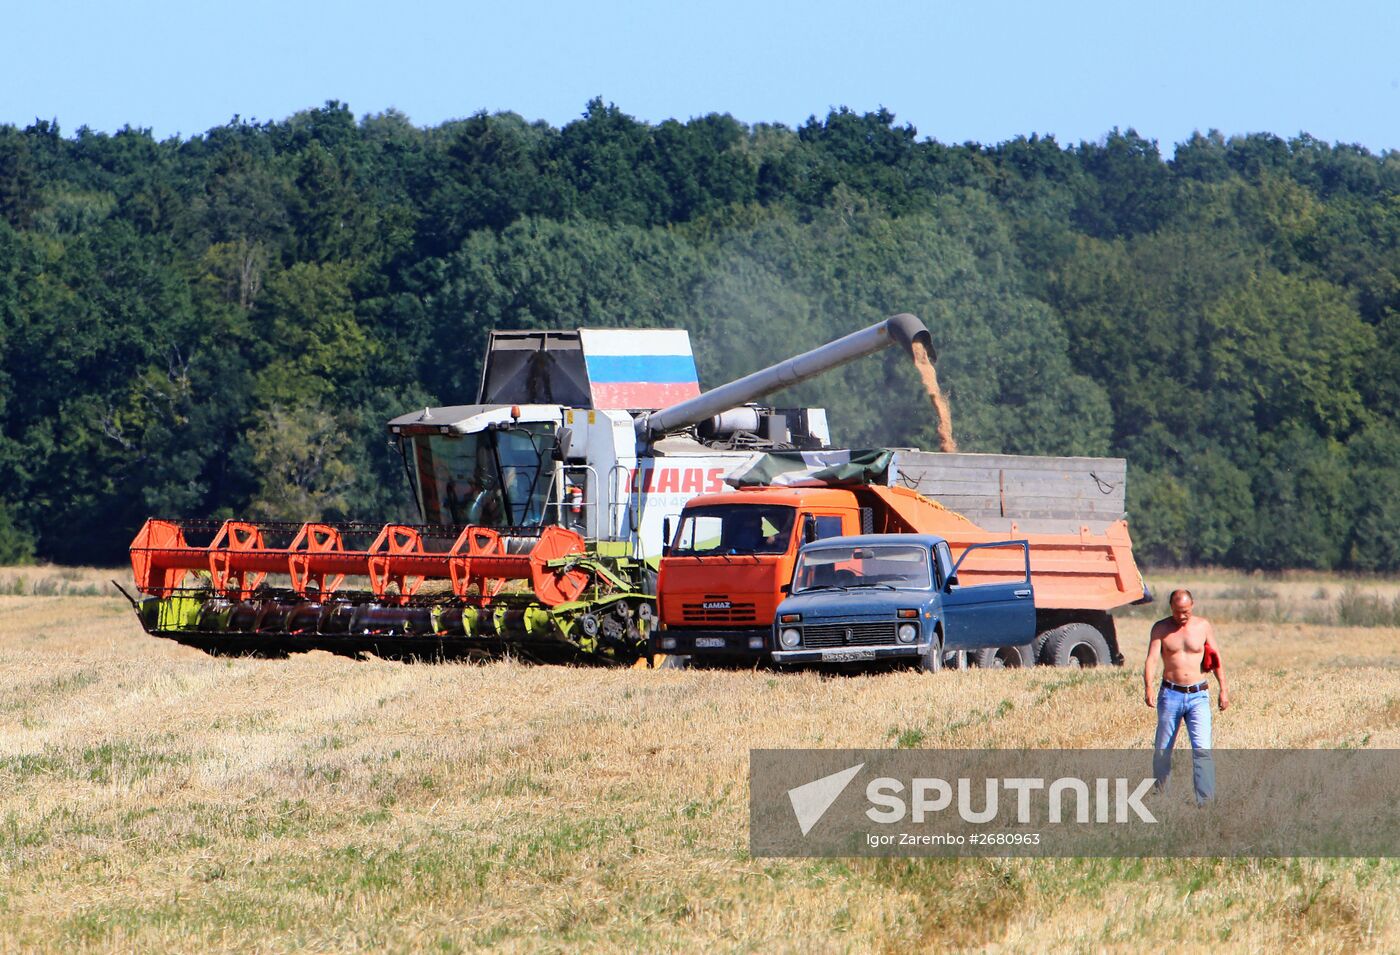 Wheat harvest in Kaliningrad Region